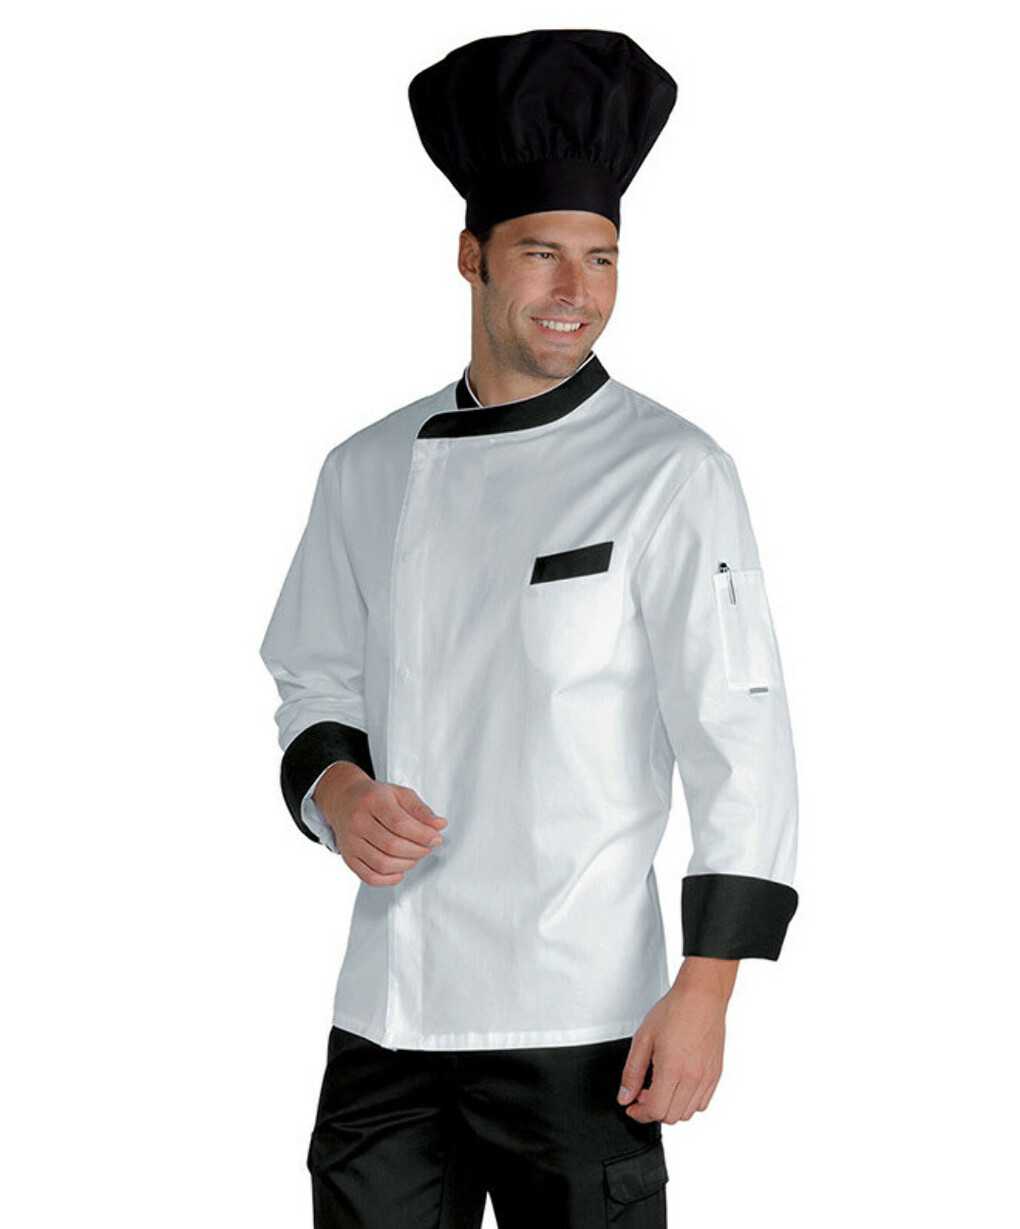 Какой должна быть спецодежда для поваров Для чего введена поварская униформа Требования и правила создания одежды для поваров кухонных работников